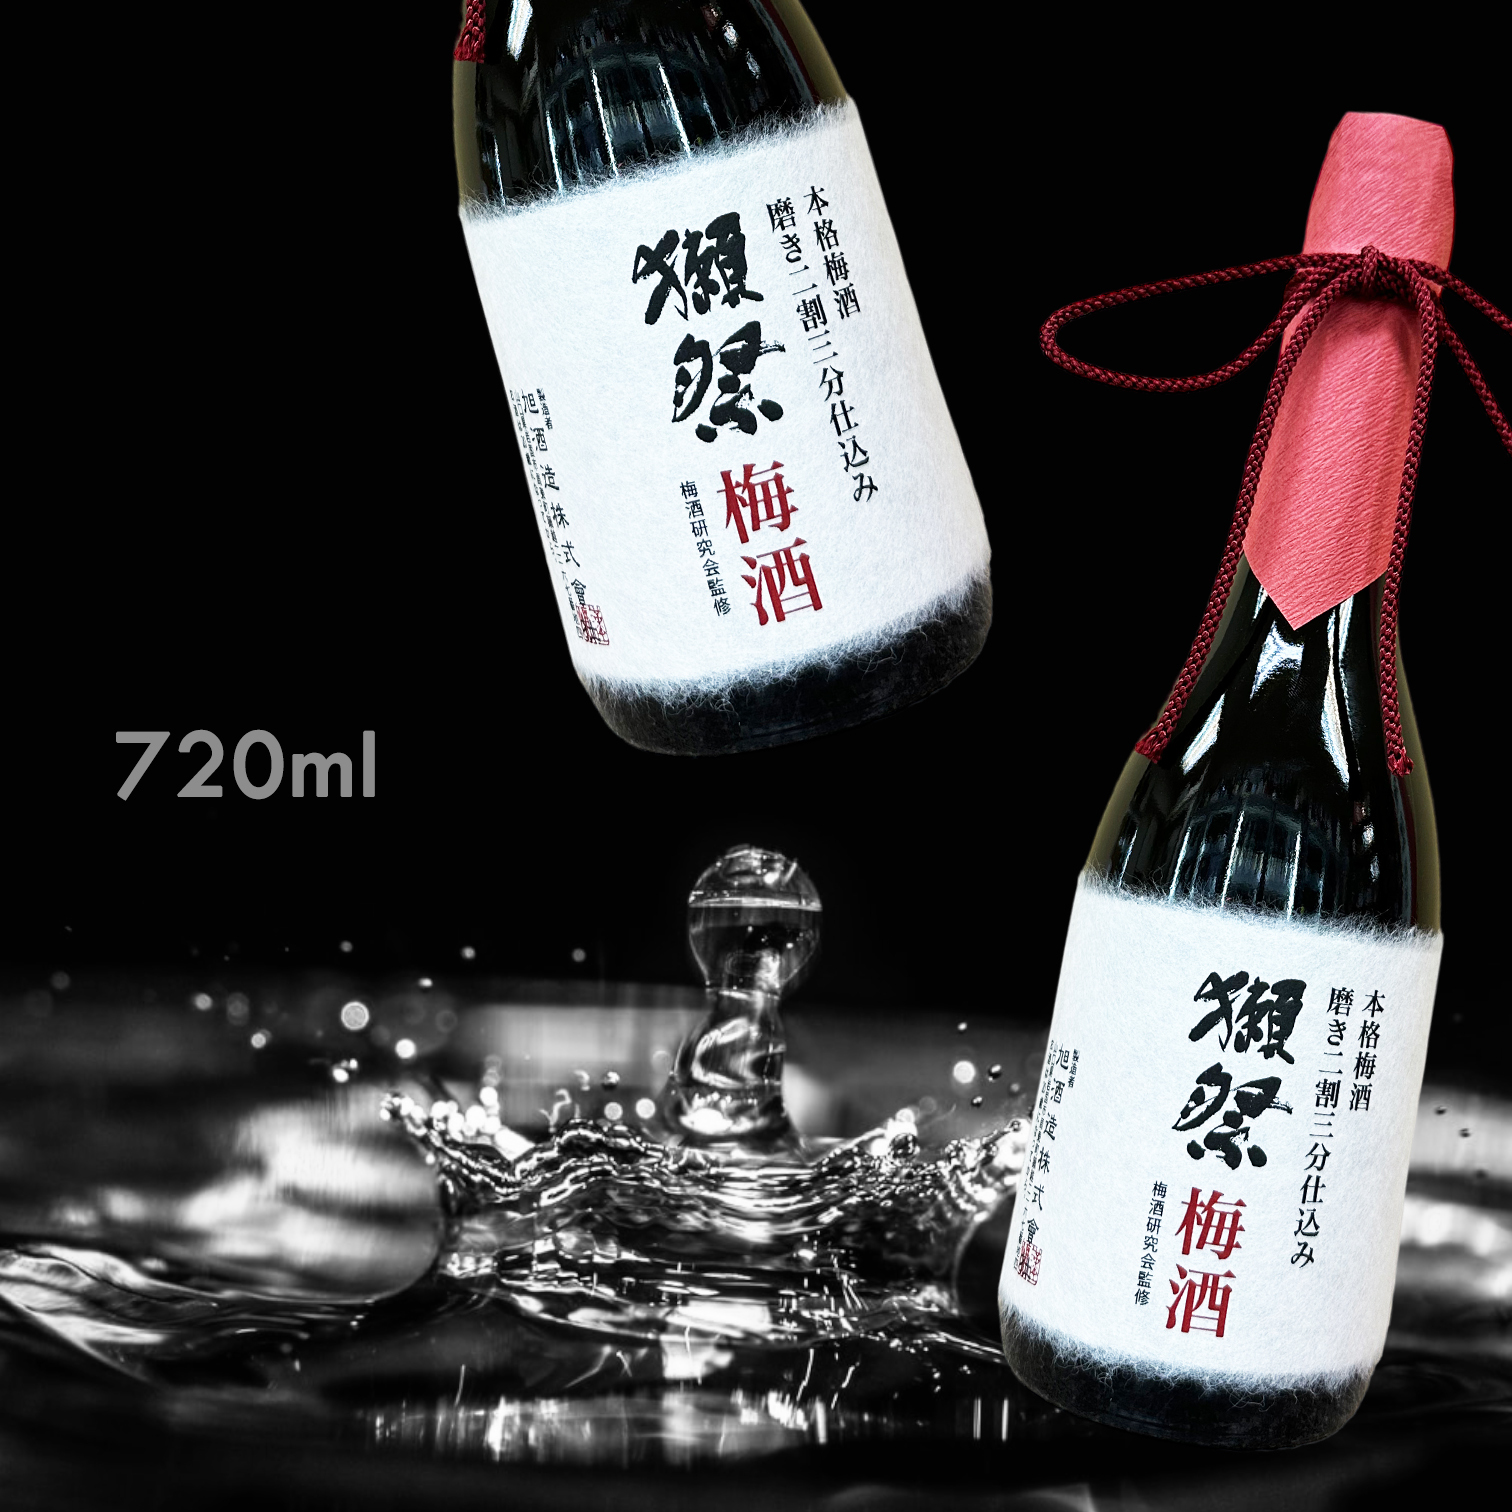 獺祭梅酒 二割三分仕込み 720ml - 飲料/酒